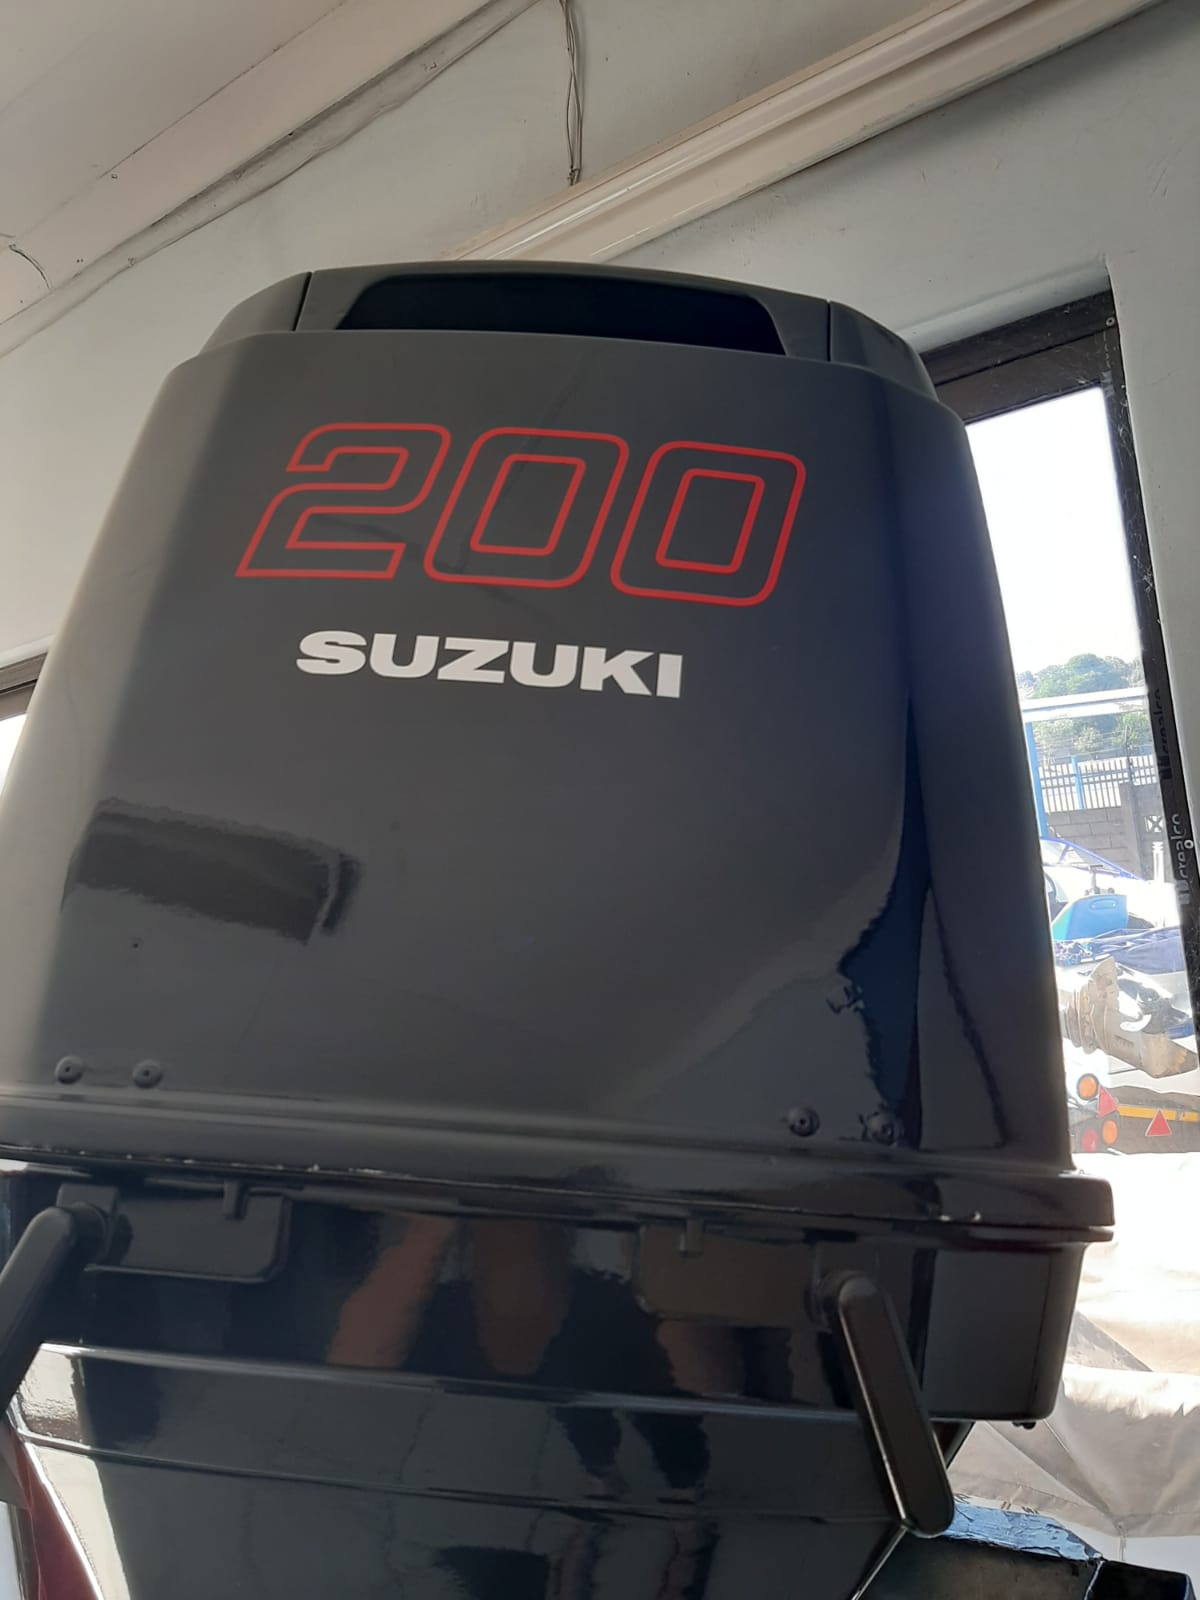 suzuki 200 outboard engine 